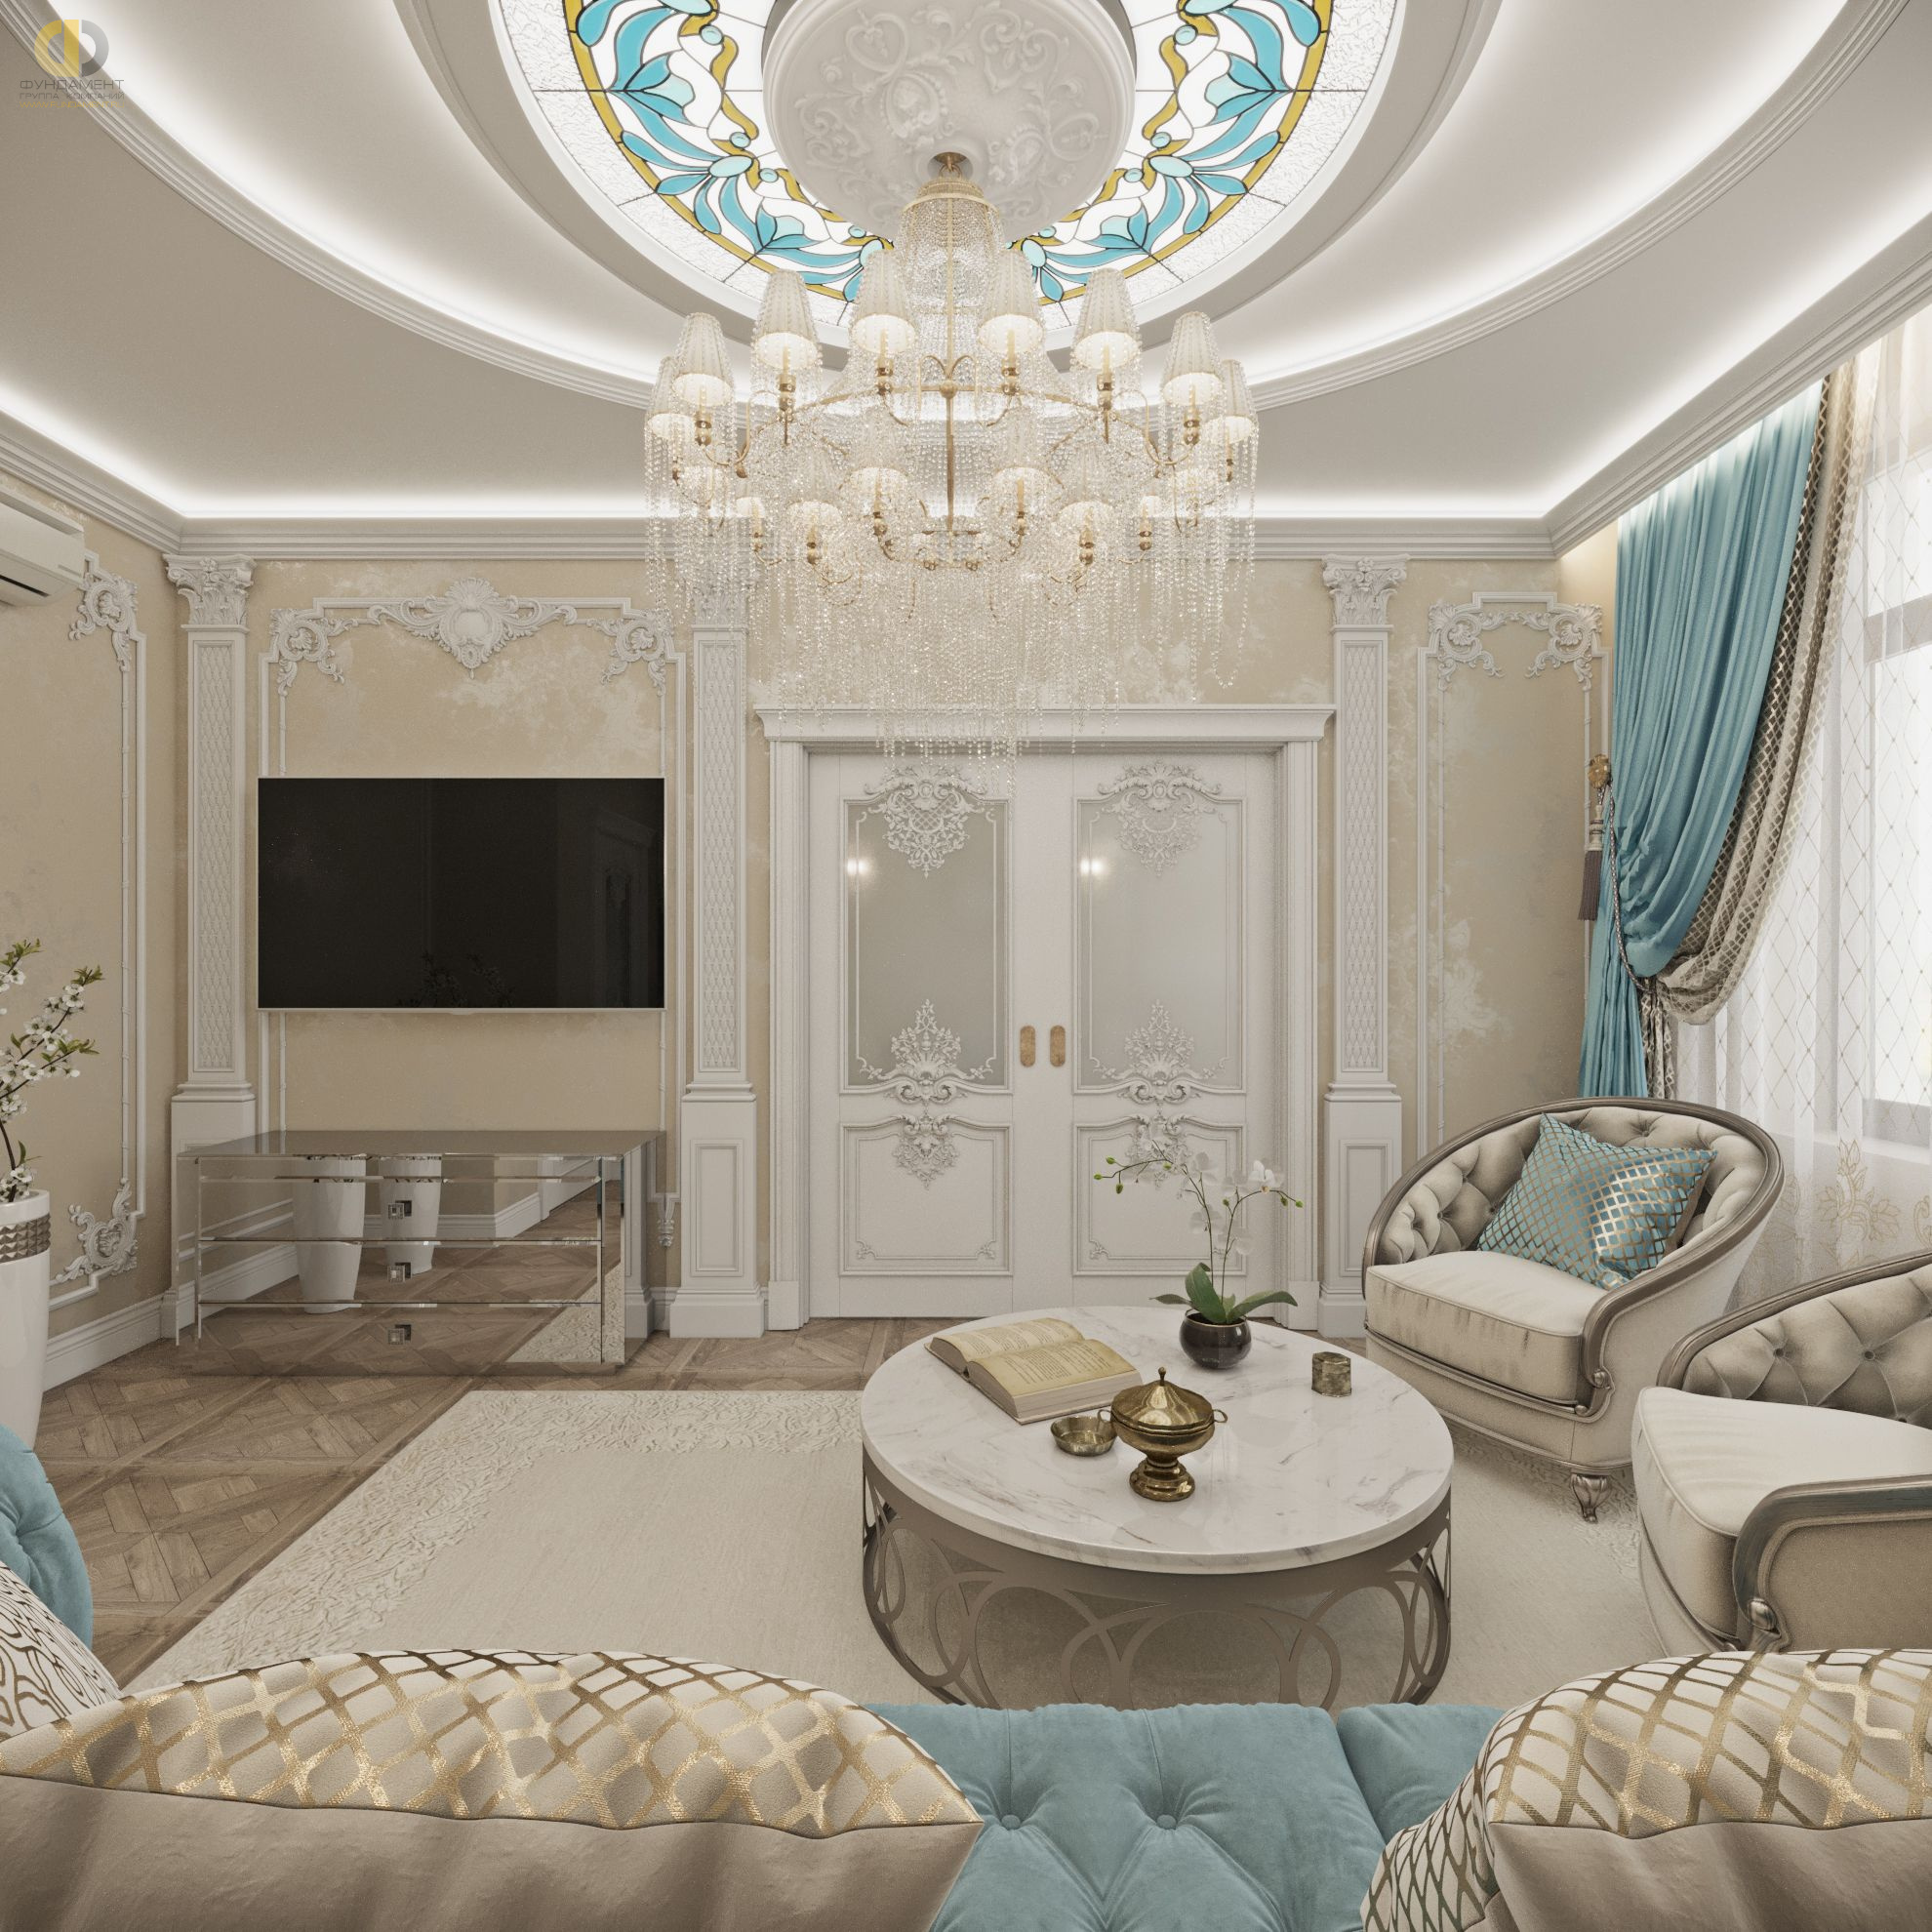 Гостиная в стиле дизайна классицизм по адресу г. Москва, Хорошевское шоссе, дом 25А, стр. 1, 2021 года